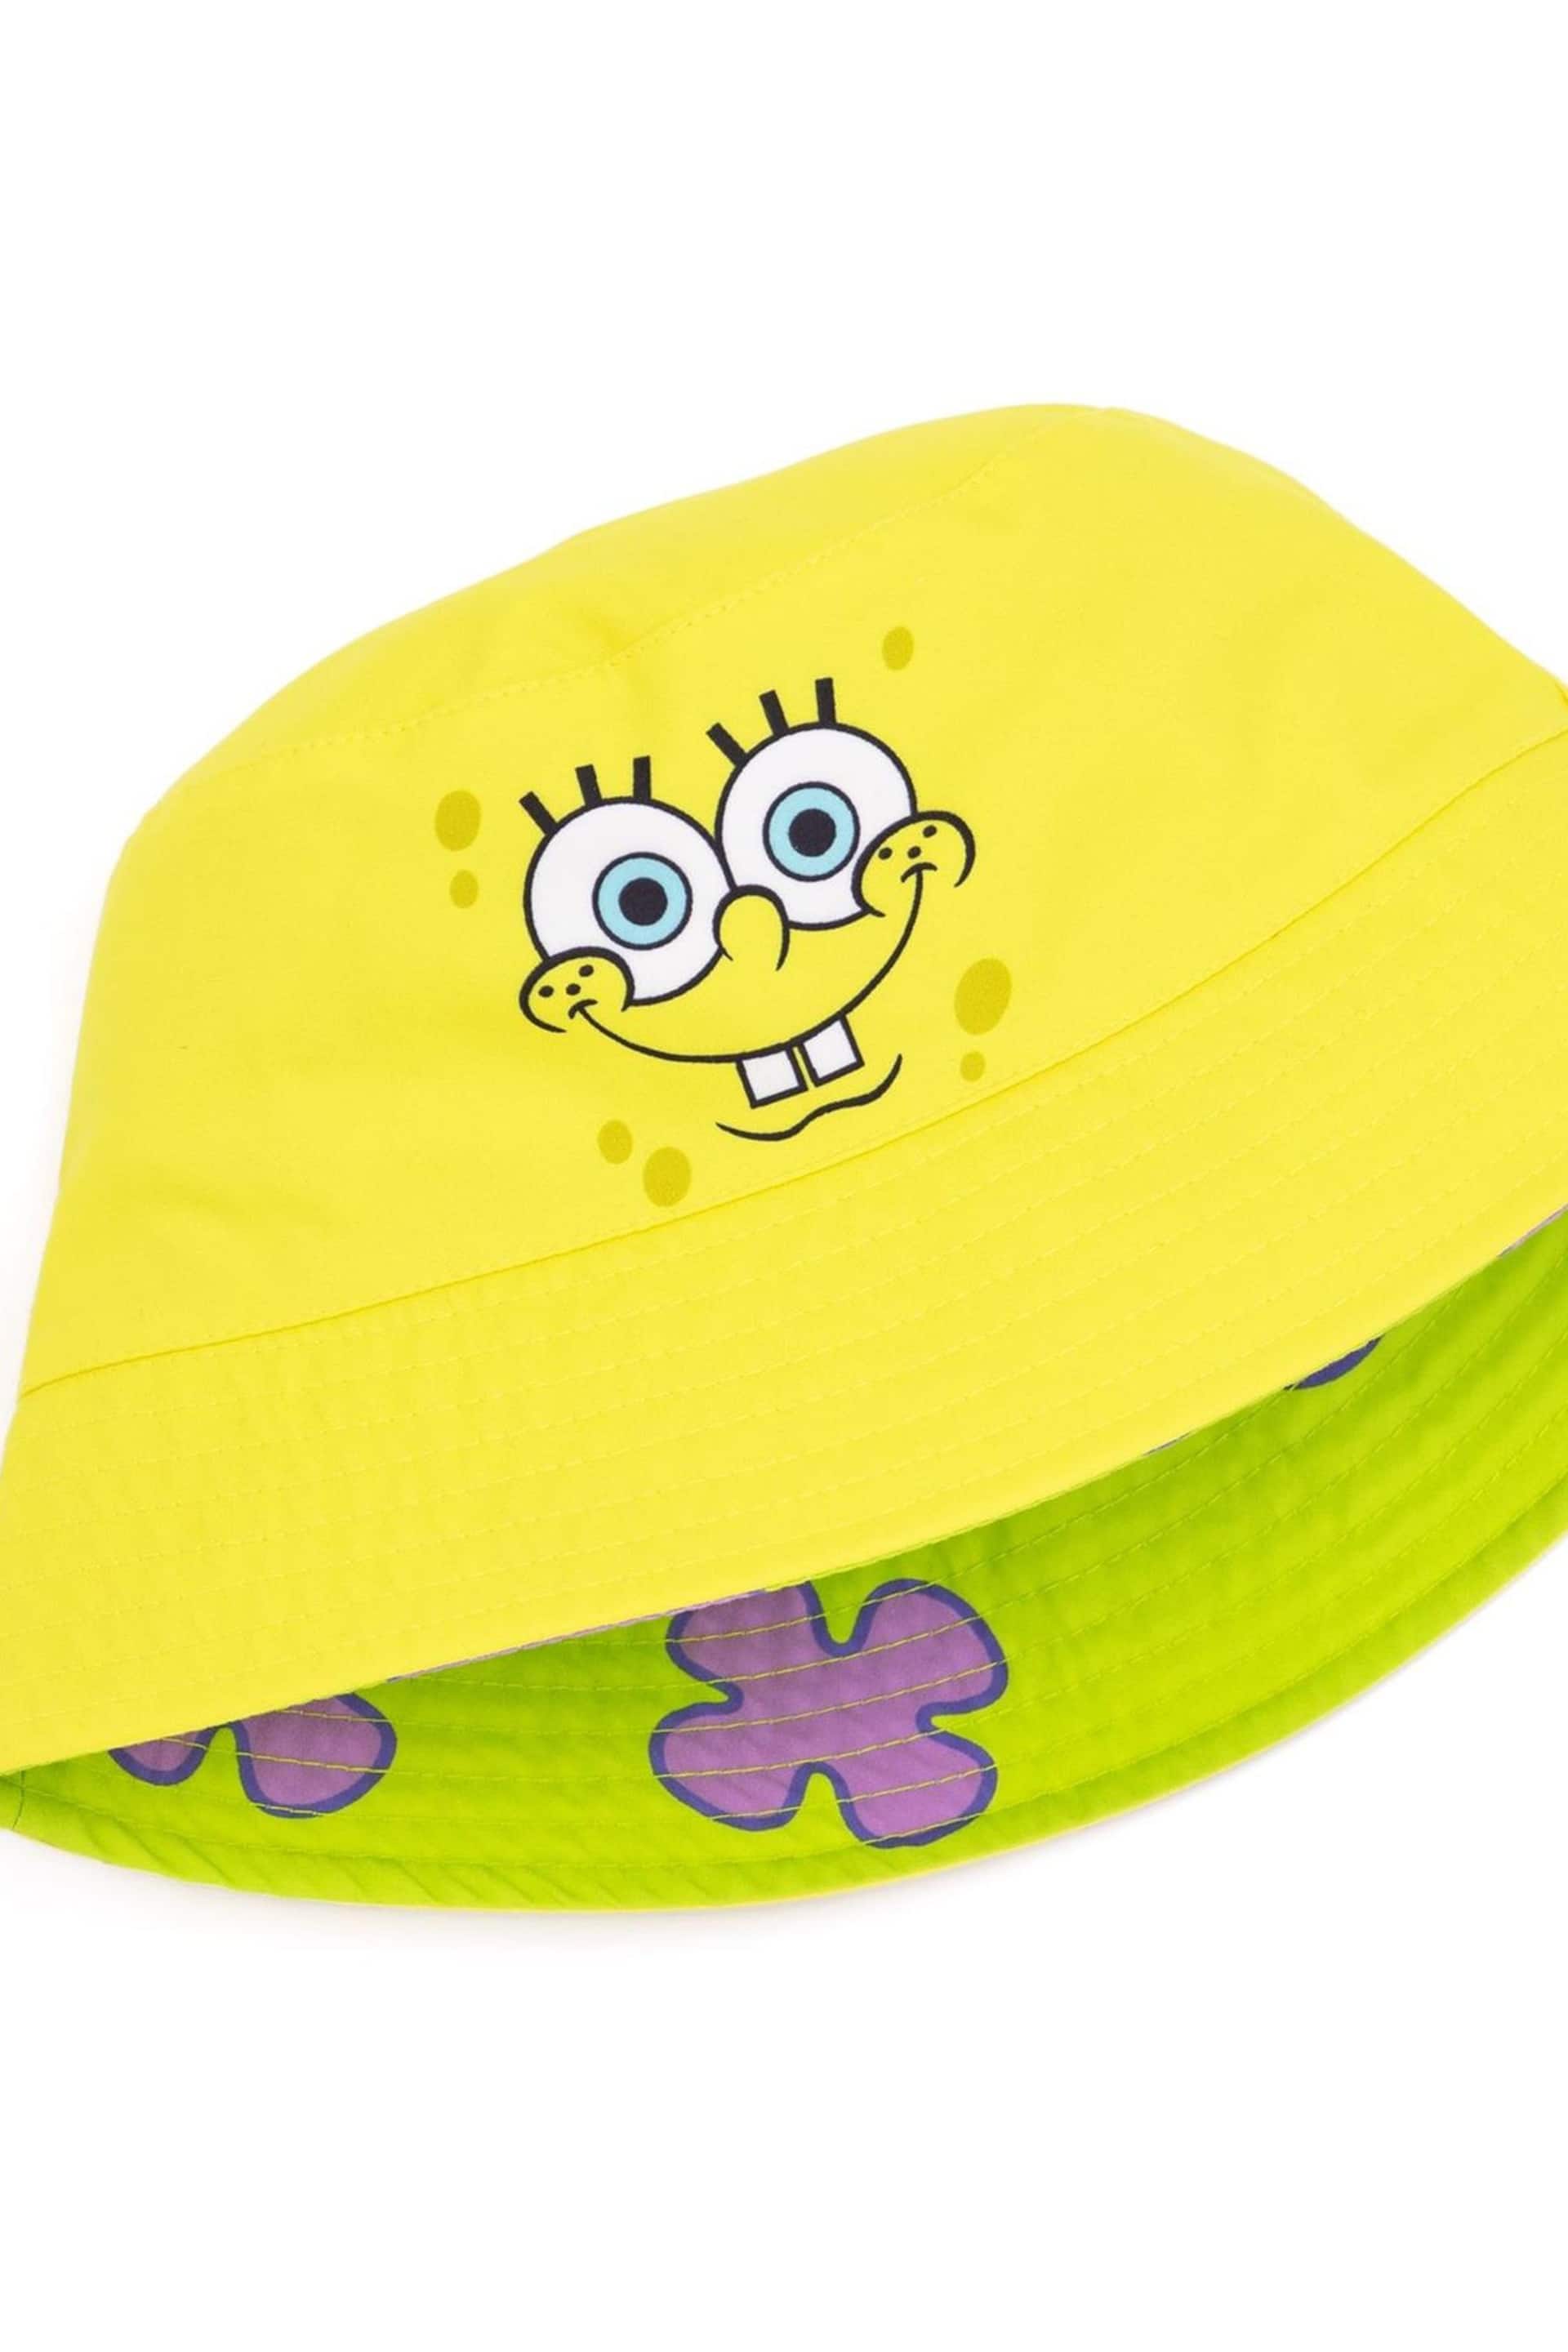 Vanilla Underground Yellow Spongebob Licensing Reversible Bucket Kids Hat - Image 3 of 5